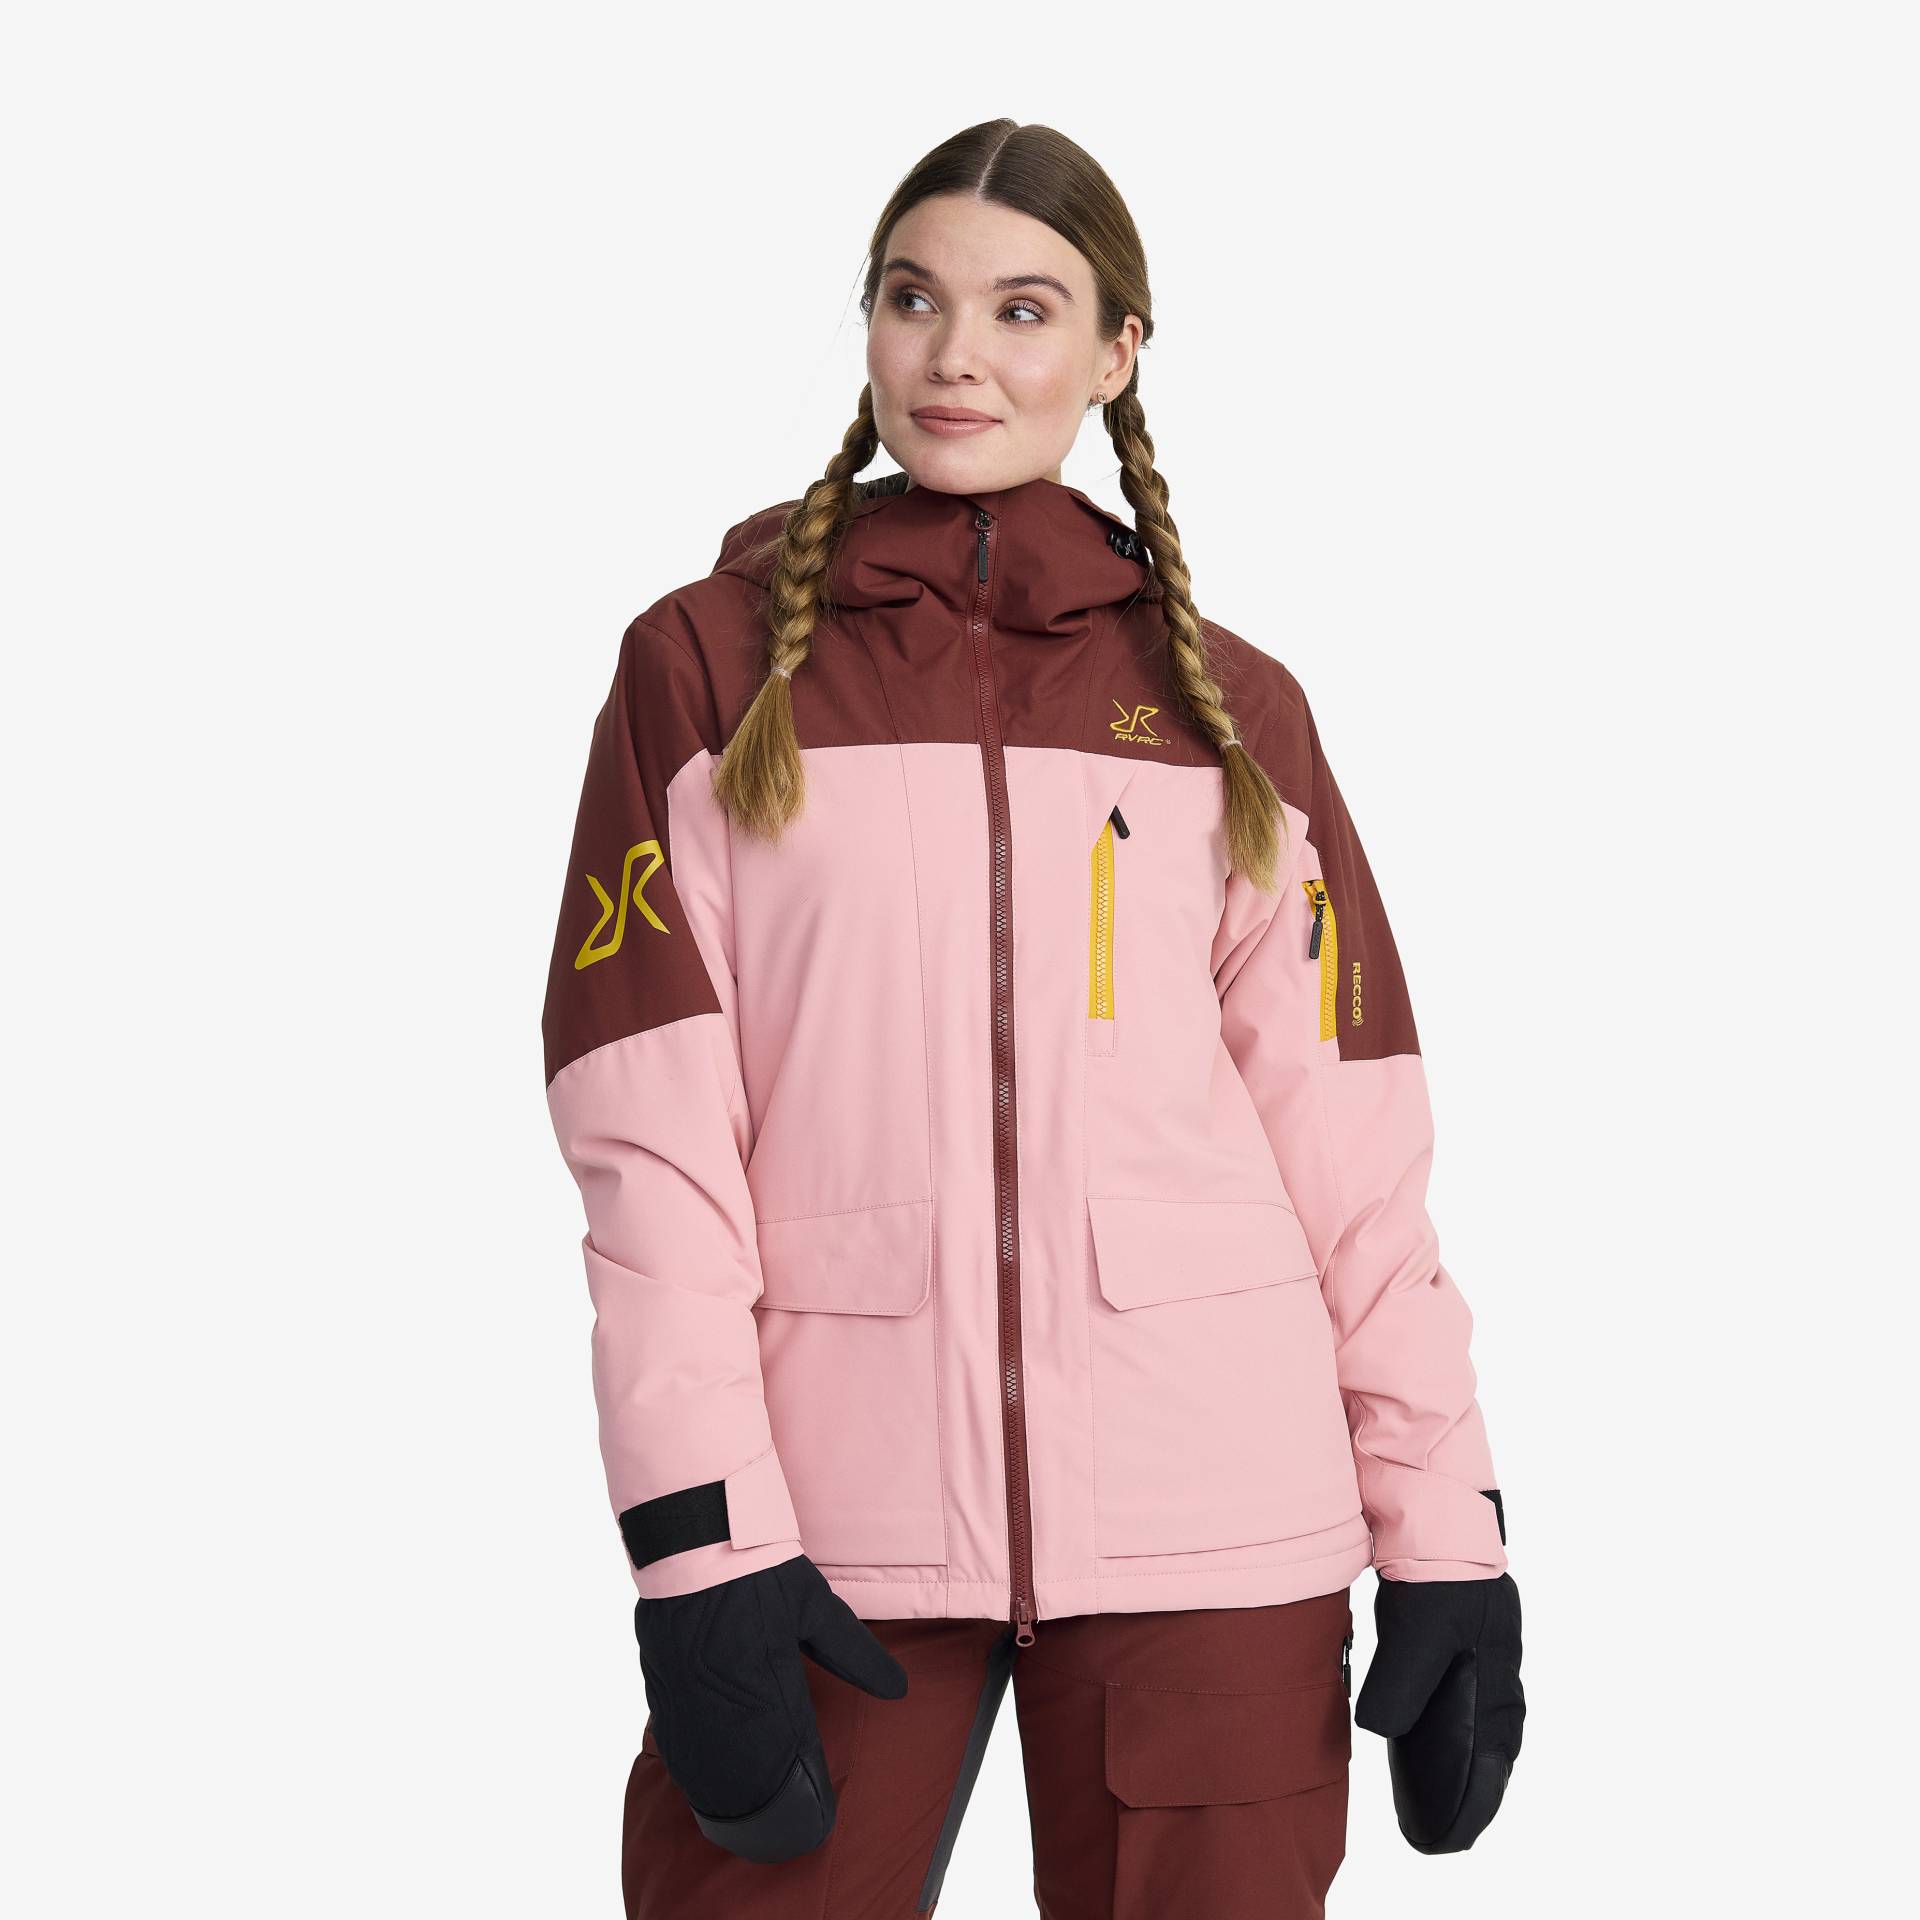 Halo 2L Insulated Ski Jacket Damen Blush, Größe:M - Skijacken von RevolutionRace